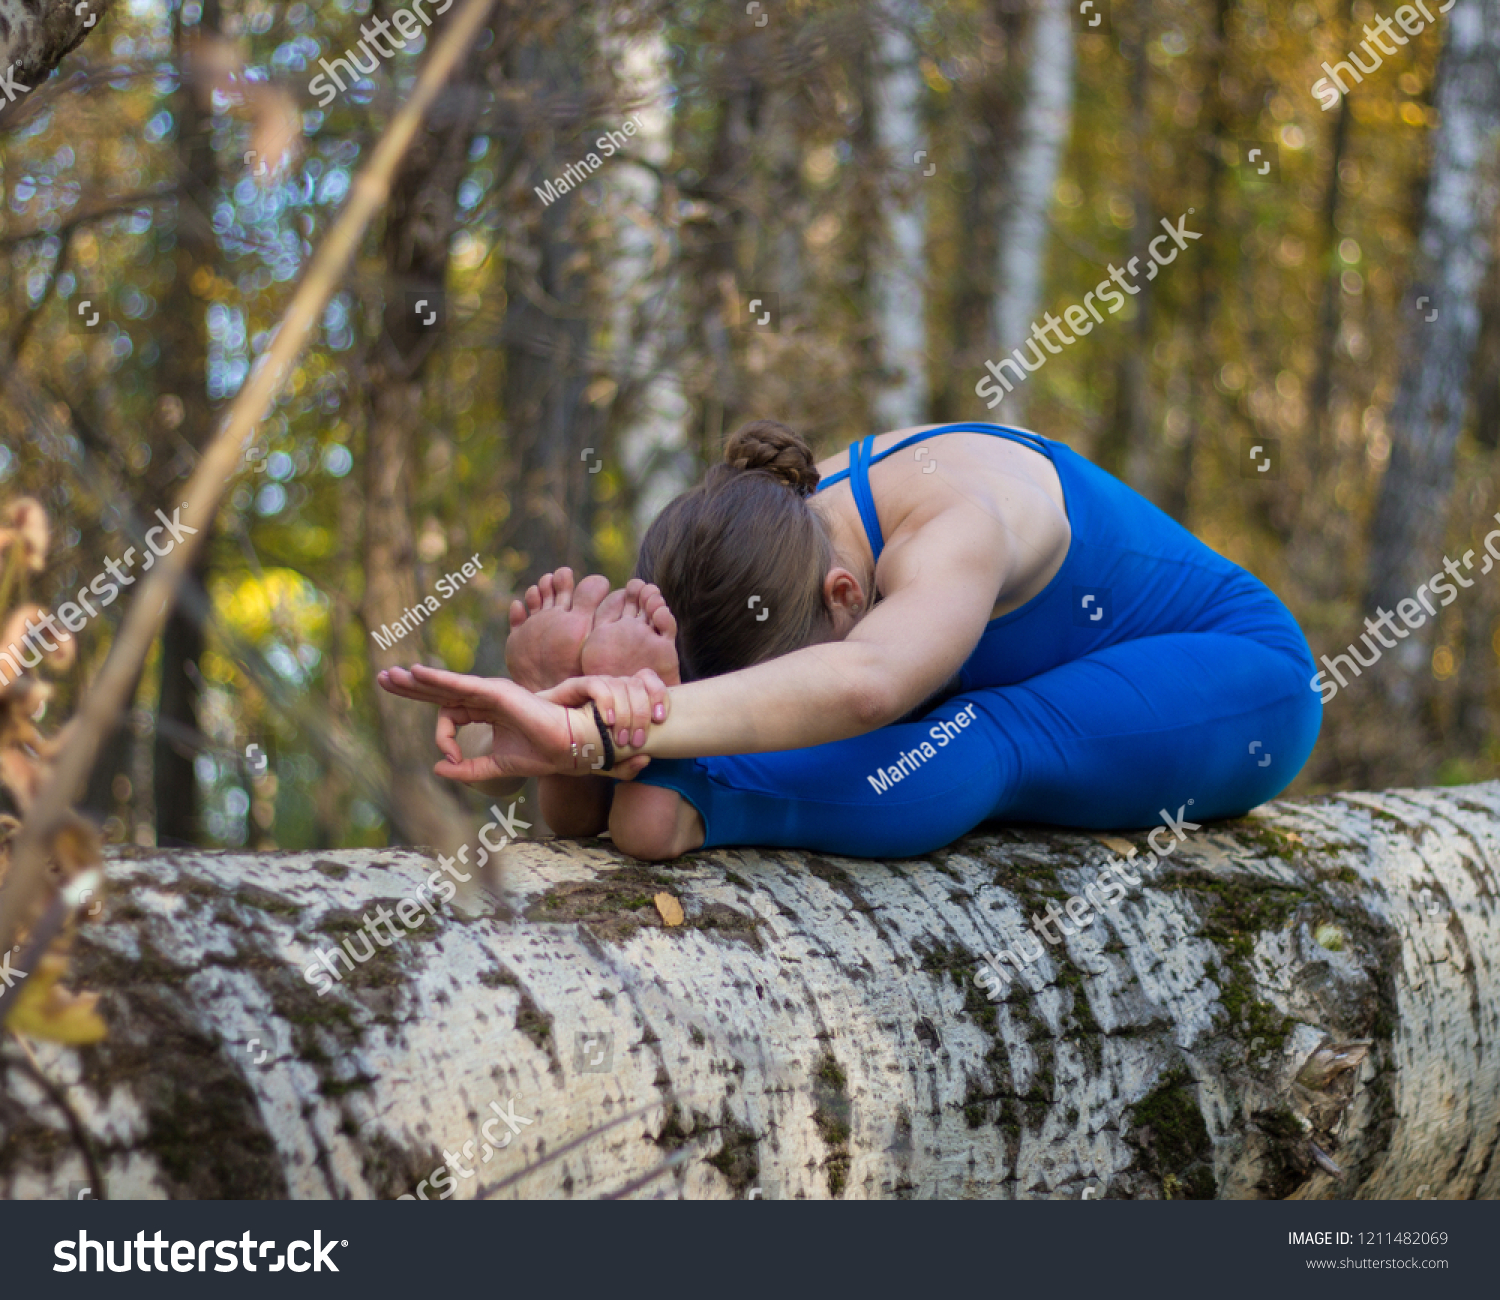 https://image.shutterstock.com/z/stock-photo-girl-doing-yoga-on-the-tree-in-the-forest-1211482069.jpg